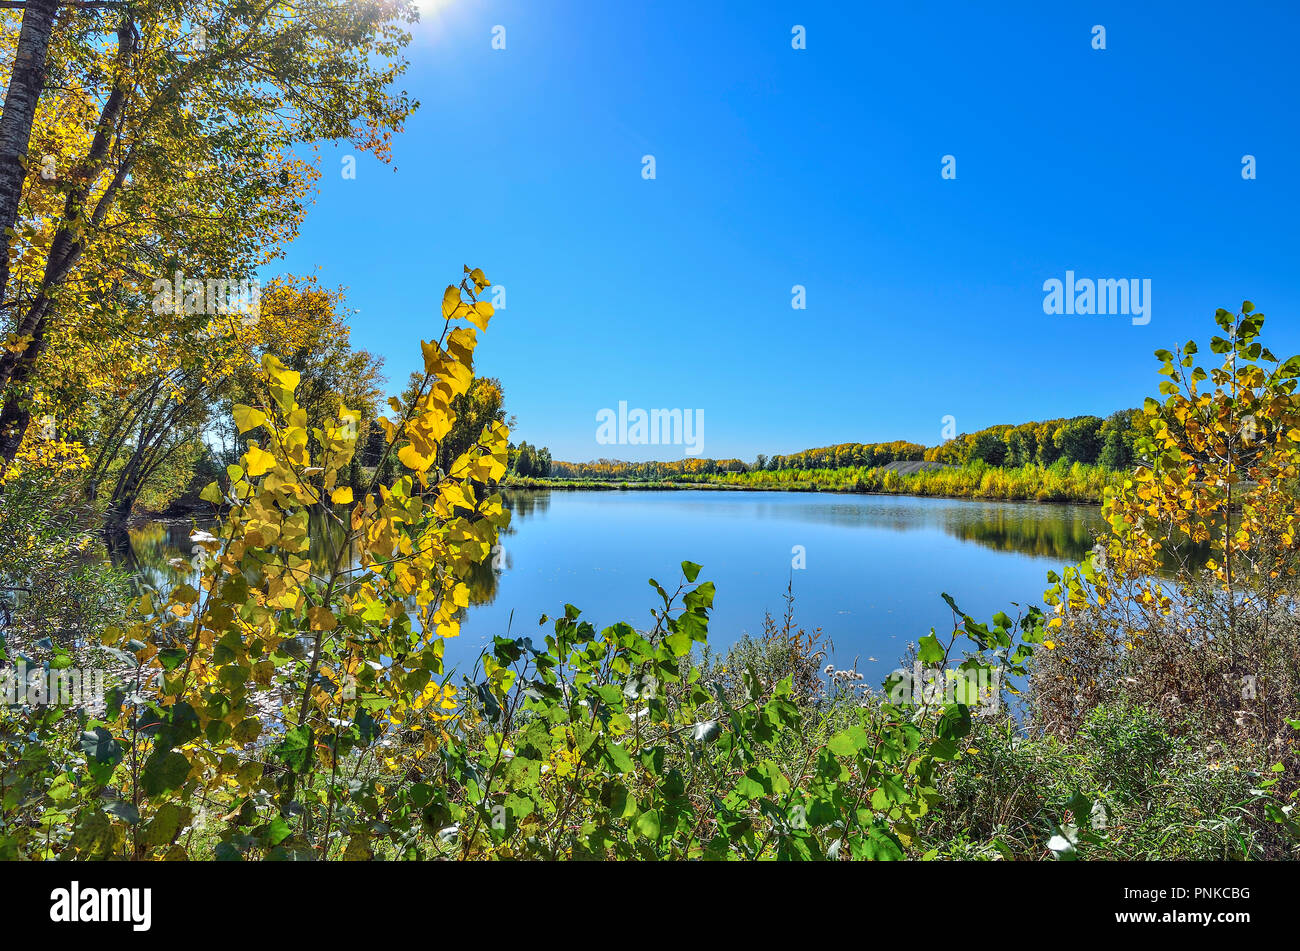 Warme, sonnige September Landschaft am Ufer des Sees. Blauer Himmel und goldenen Laub der Bäume auf der Oberfläche des Wassers wider - Schönheit des Herbstes Stockfoto